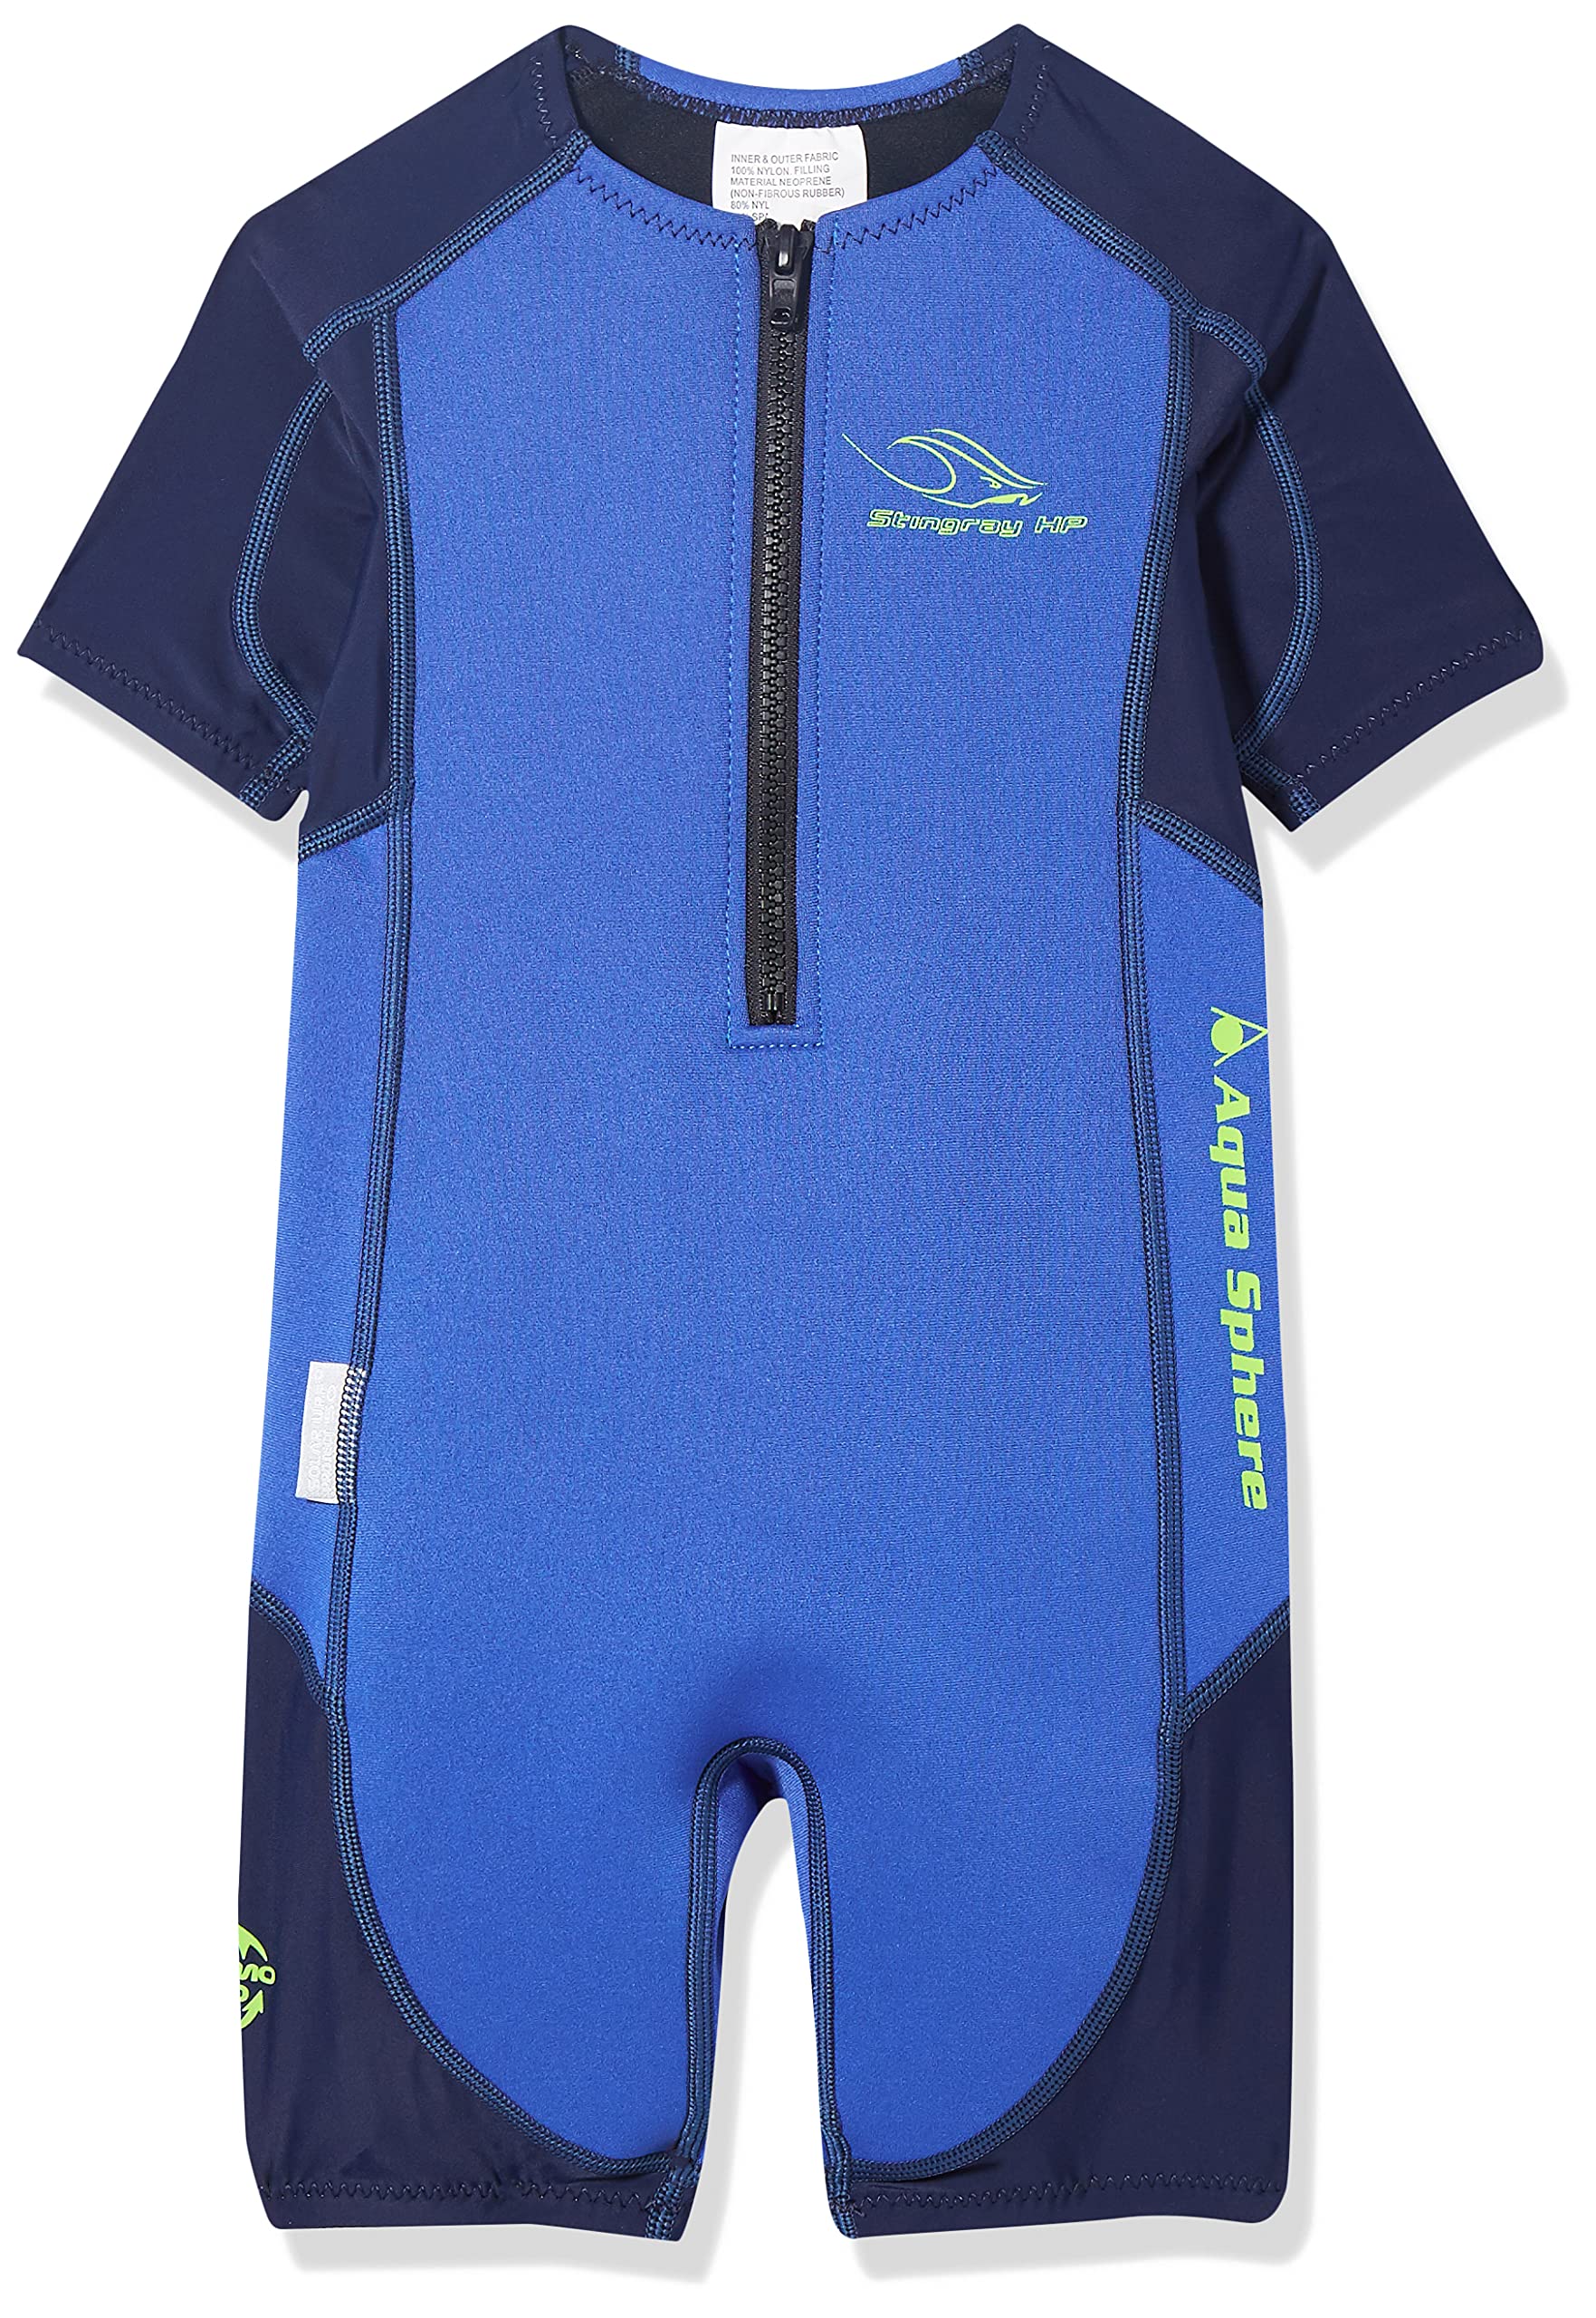 Aqua Sphere Unisex Jugend Stingray Hp Short Sleeve Wetsuit, Blau/Navy, 152 (Herstellergröße: 12 Jahre)